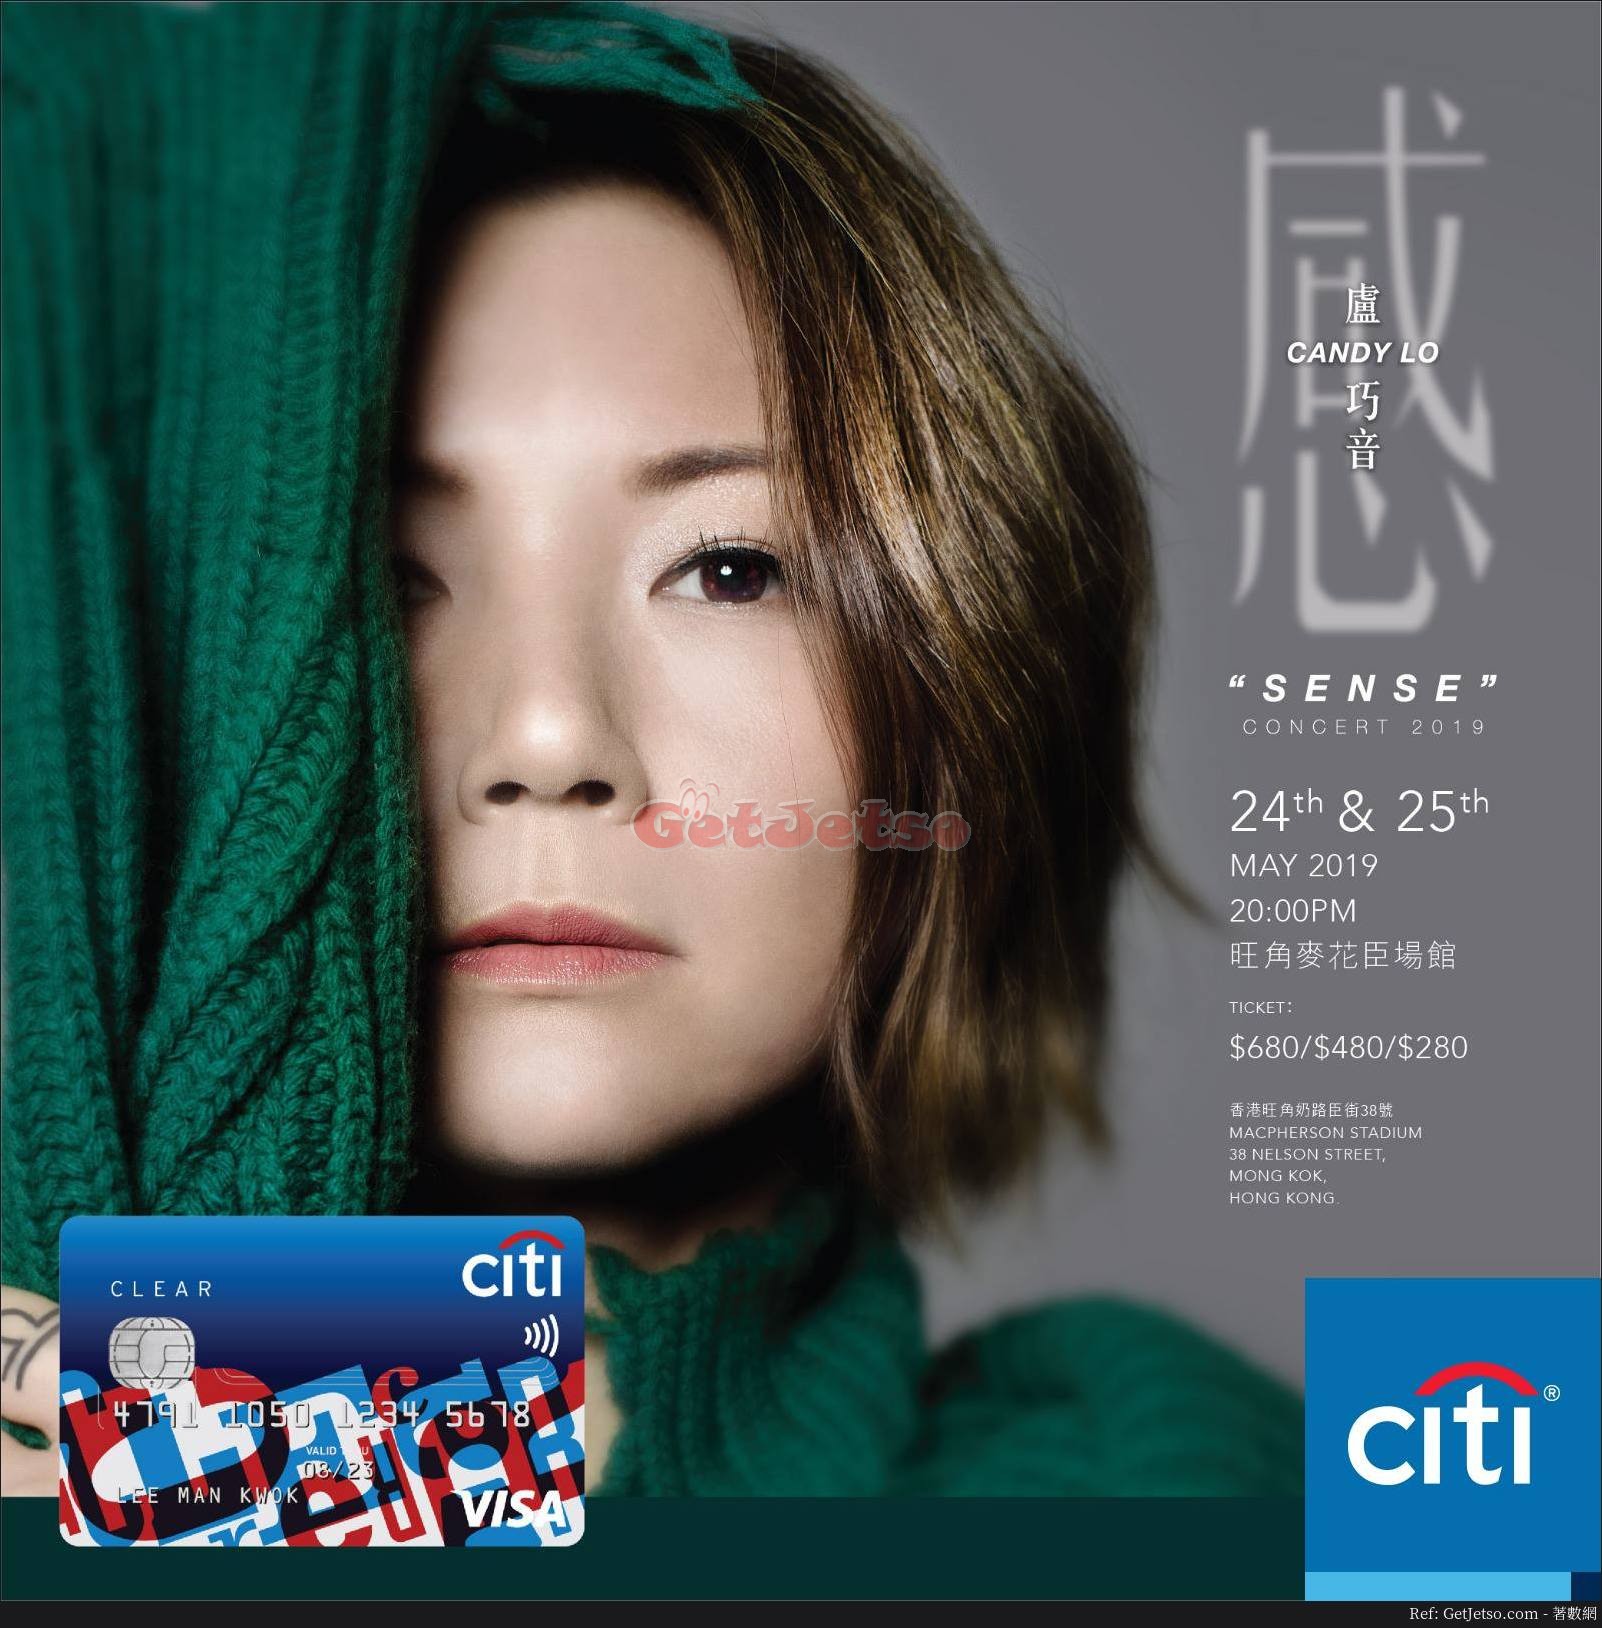 盧巧音SENSE・感演唱會2019 優先訂票優惠@Citi信用卡(19年3月11-13日)圖片1